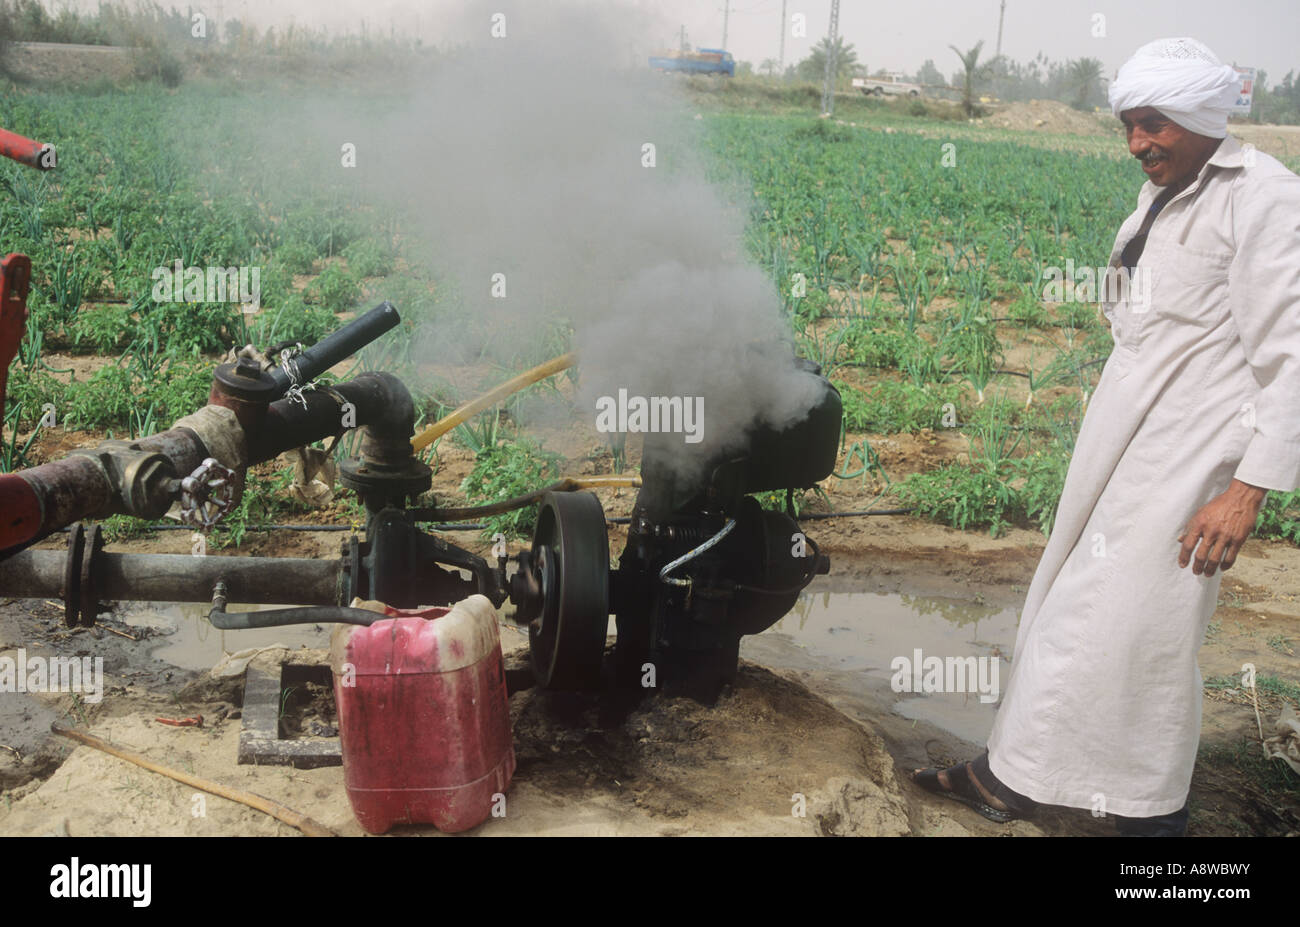 Verschmutzung durch einen Generator von einem ägyptischen Bauern verwendet für das Pumpen von Wasser in seinem Gebiet in der Nähe von Suez Stockfoto